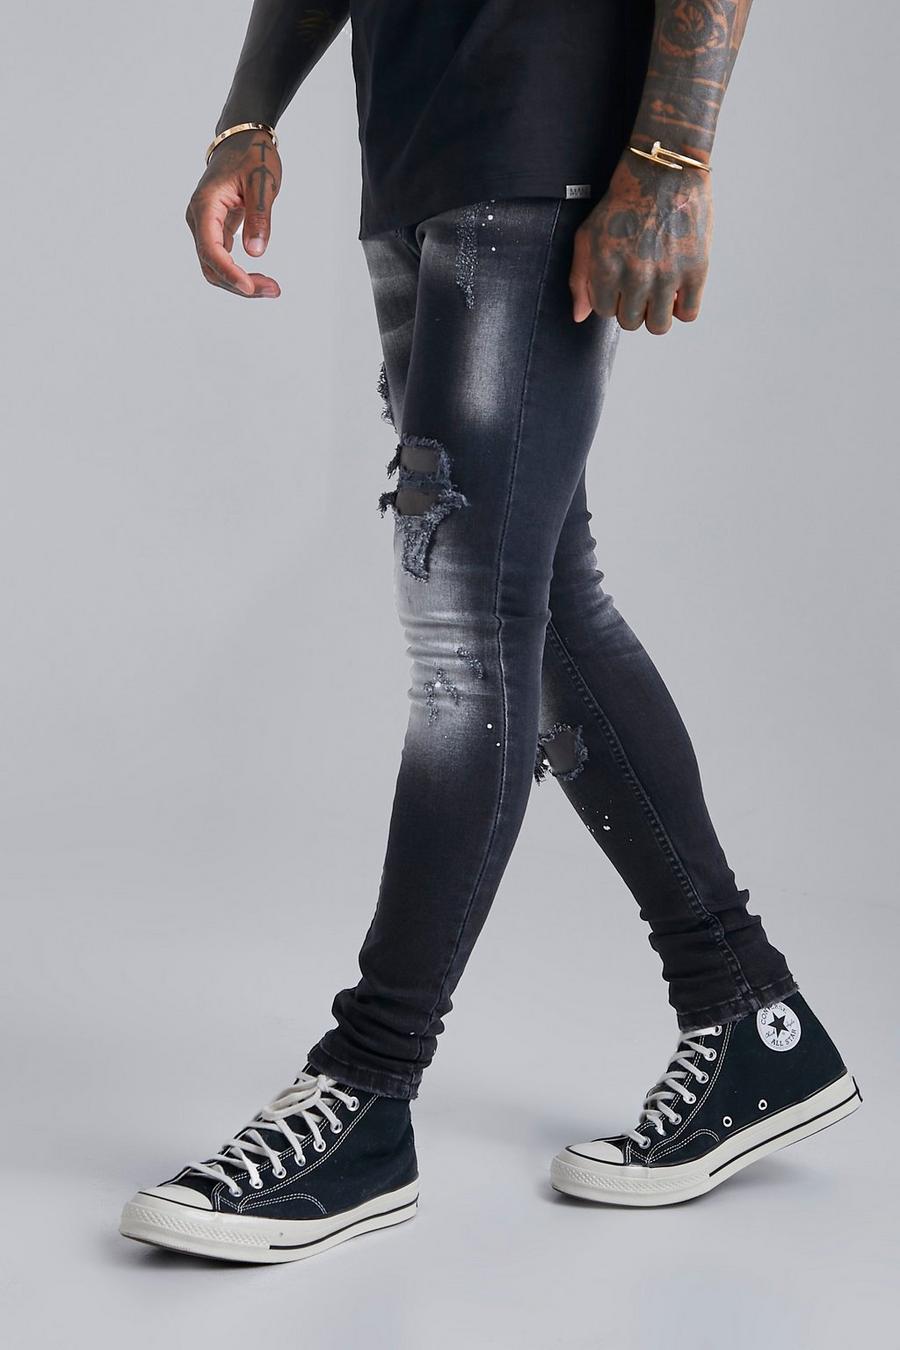 שחור דהוי סופר סקיני ג'ינס עם קרעים וכתמי צבע